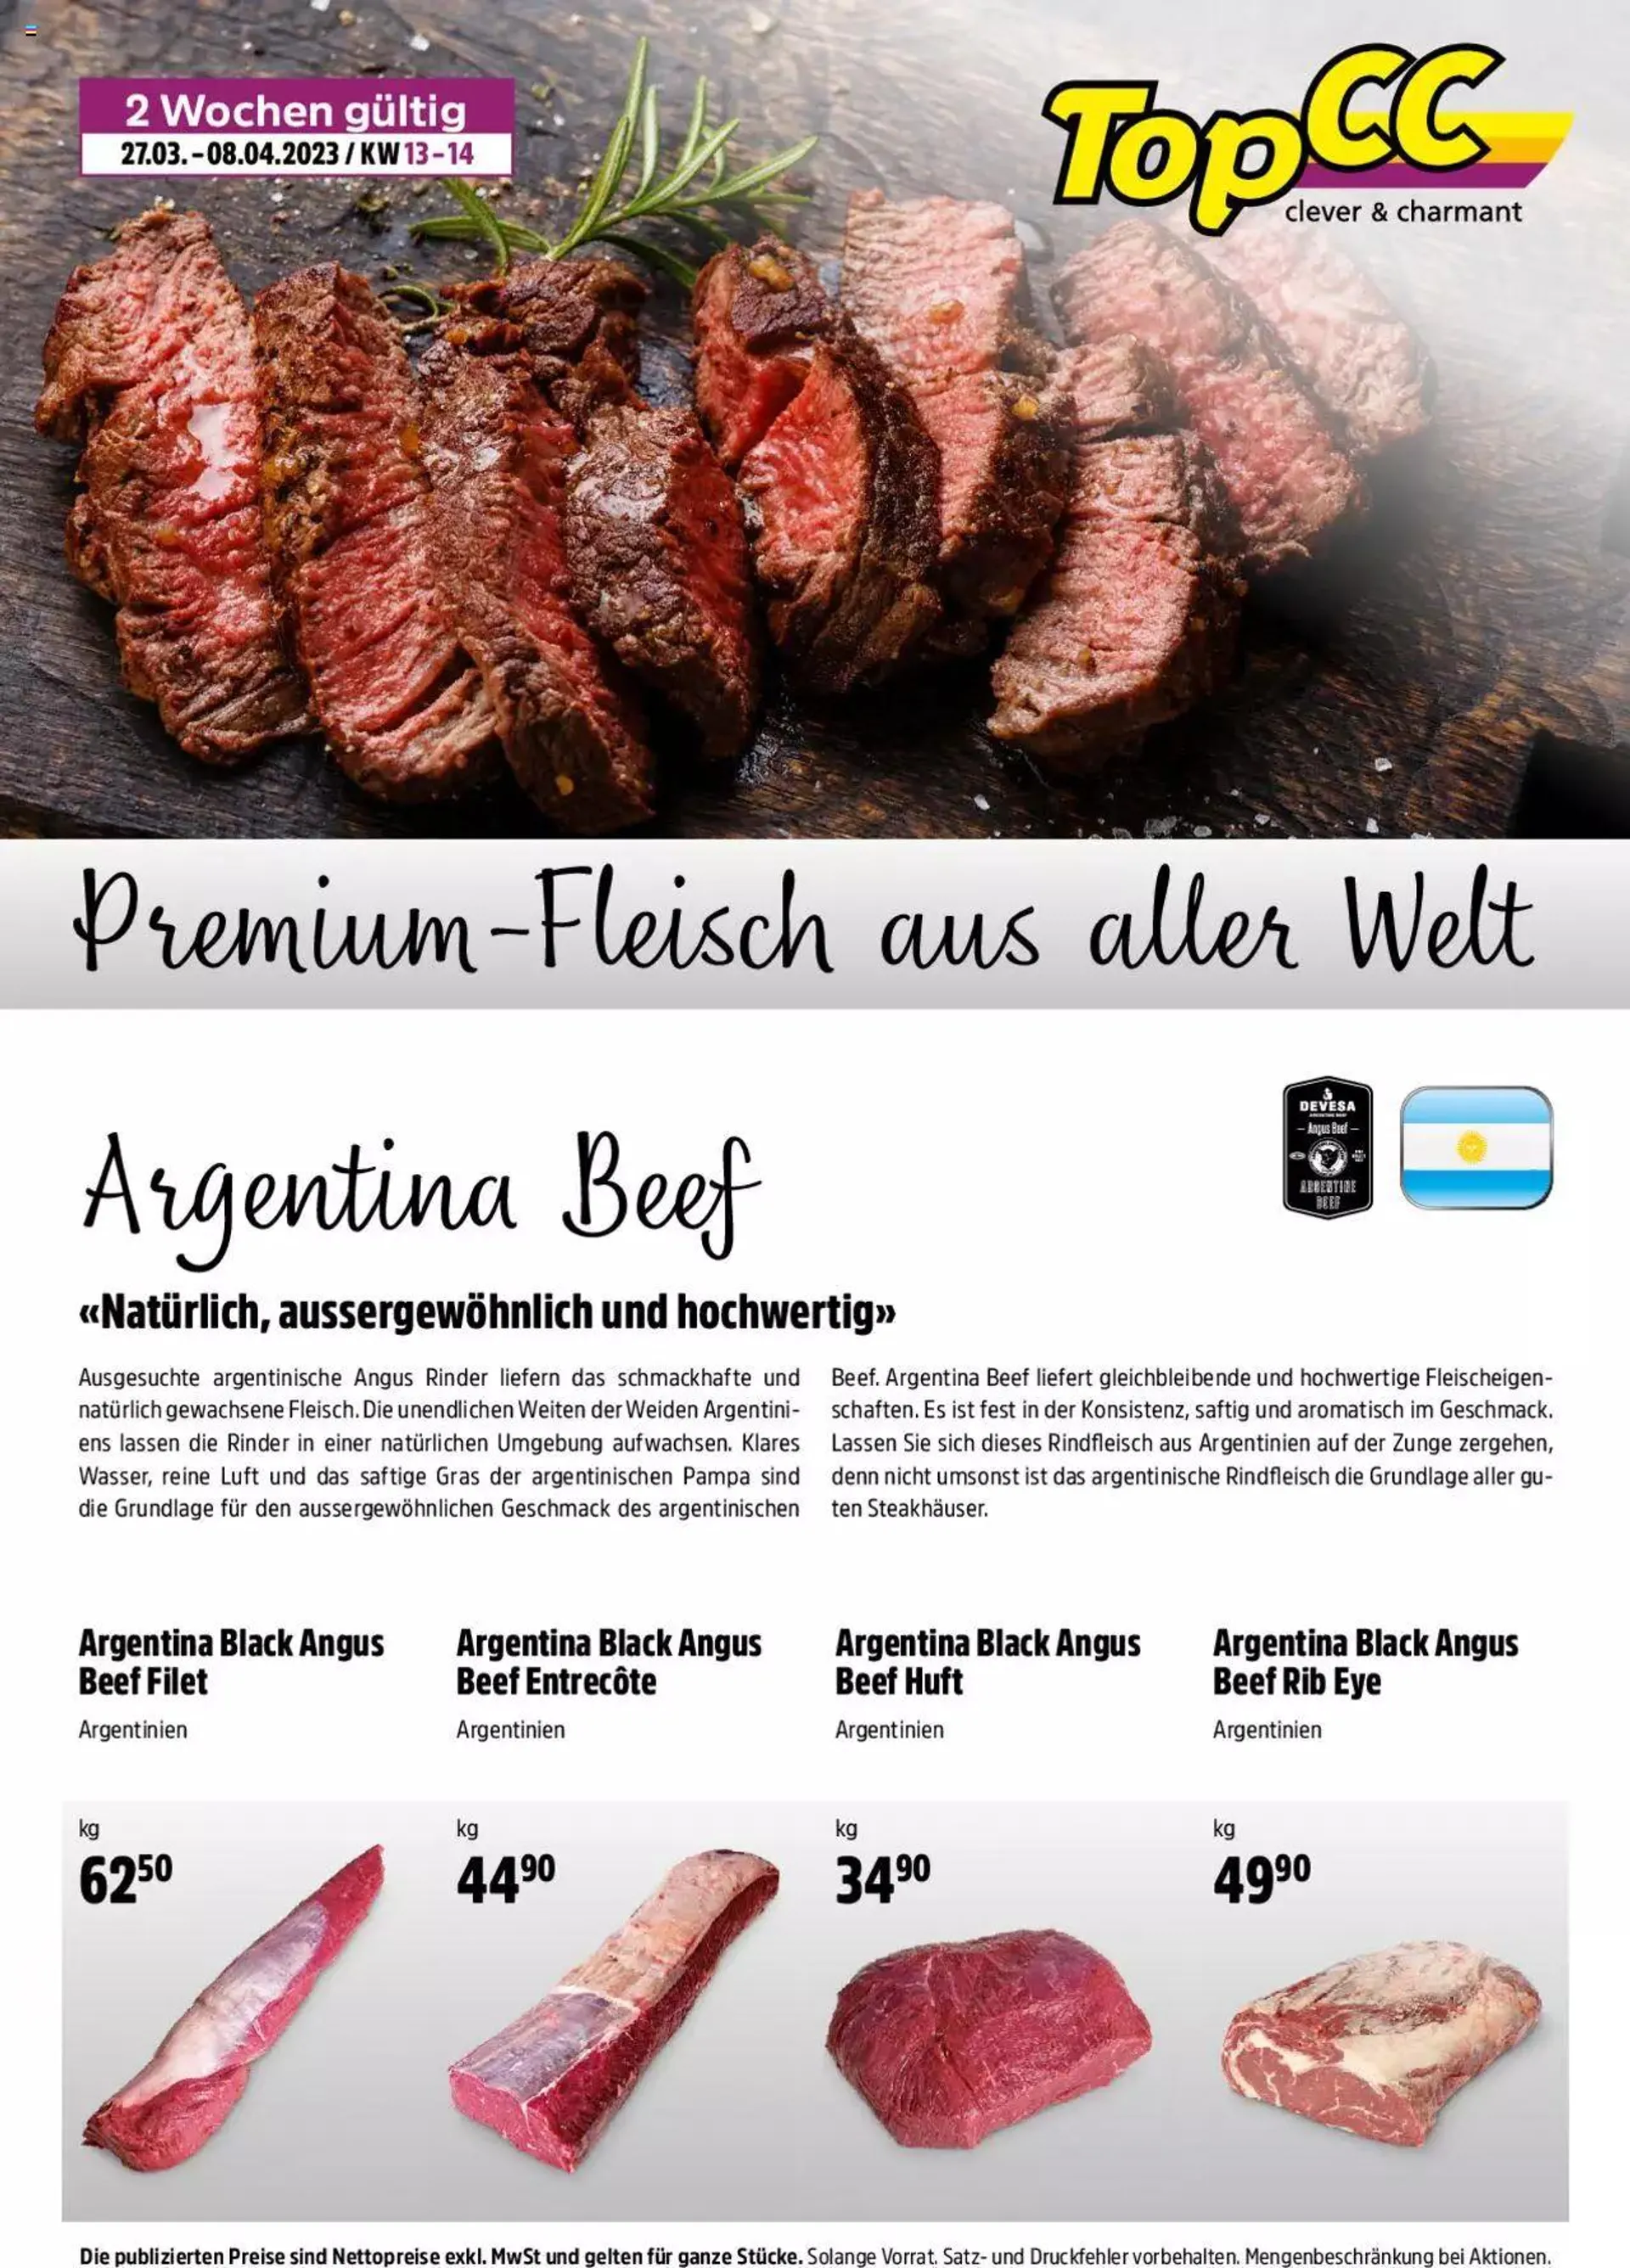 TopCC Premium Fleisch und aller Welt